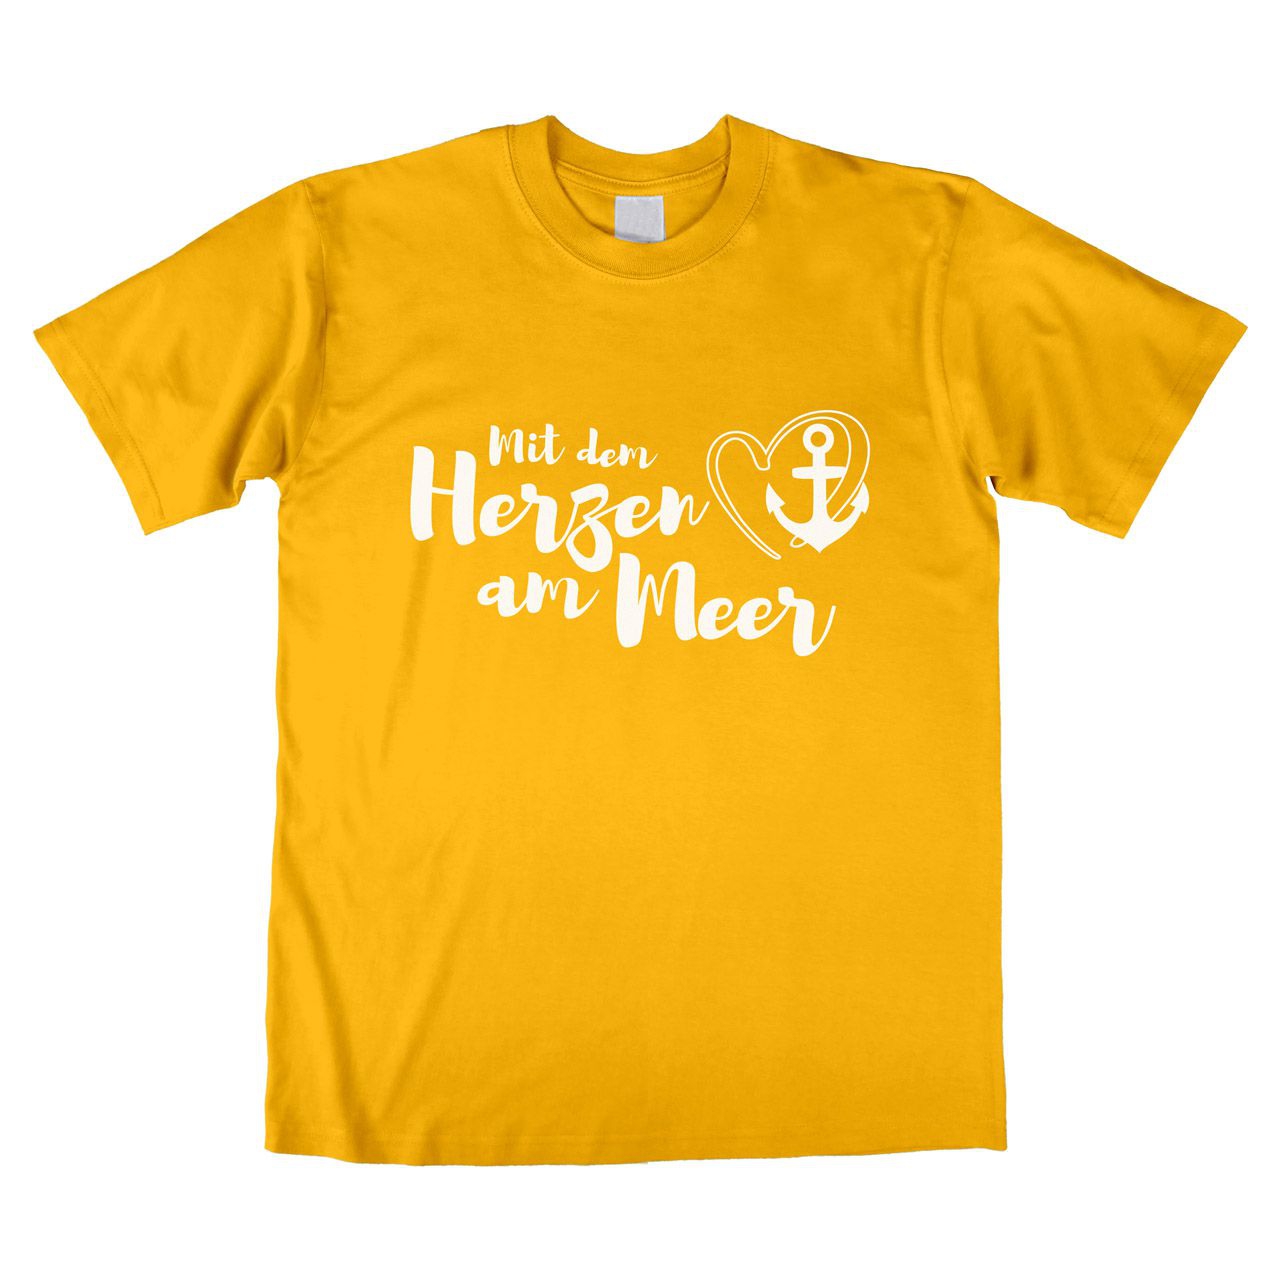 Mit dem Herzen am Meer Unisex T-Shirt gelb Medium